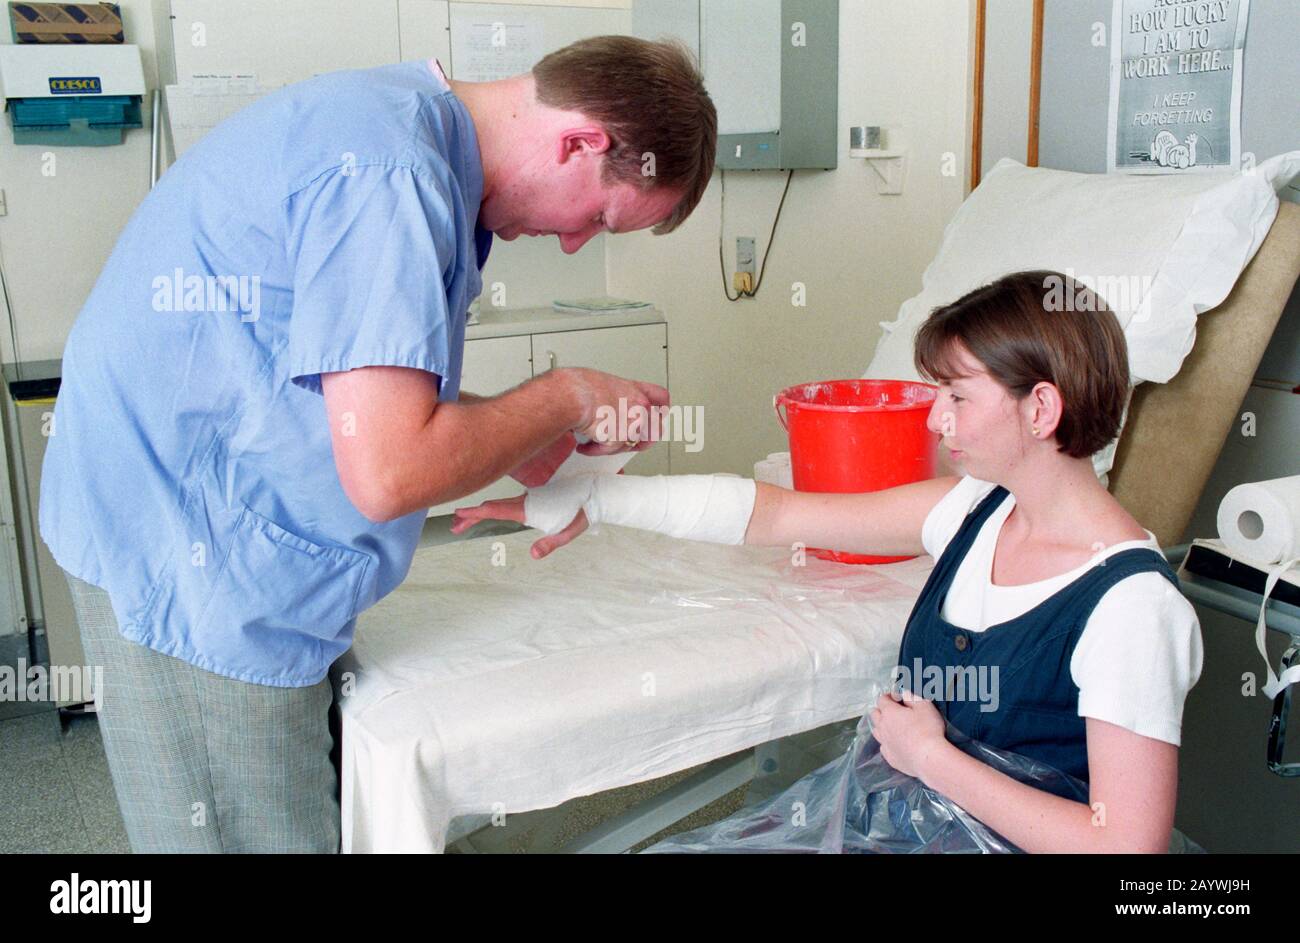 avant d'appliquer un plâtre moulé à un membre cassé, l'infirmière mettra d'abord sur un rembourrage et un bandage doux Banque D'Images